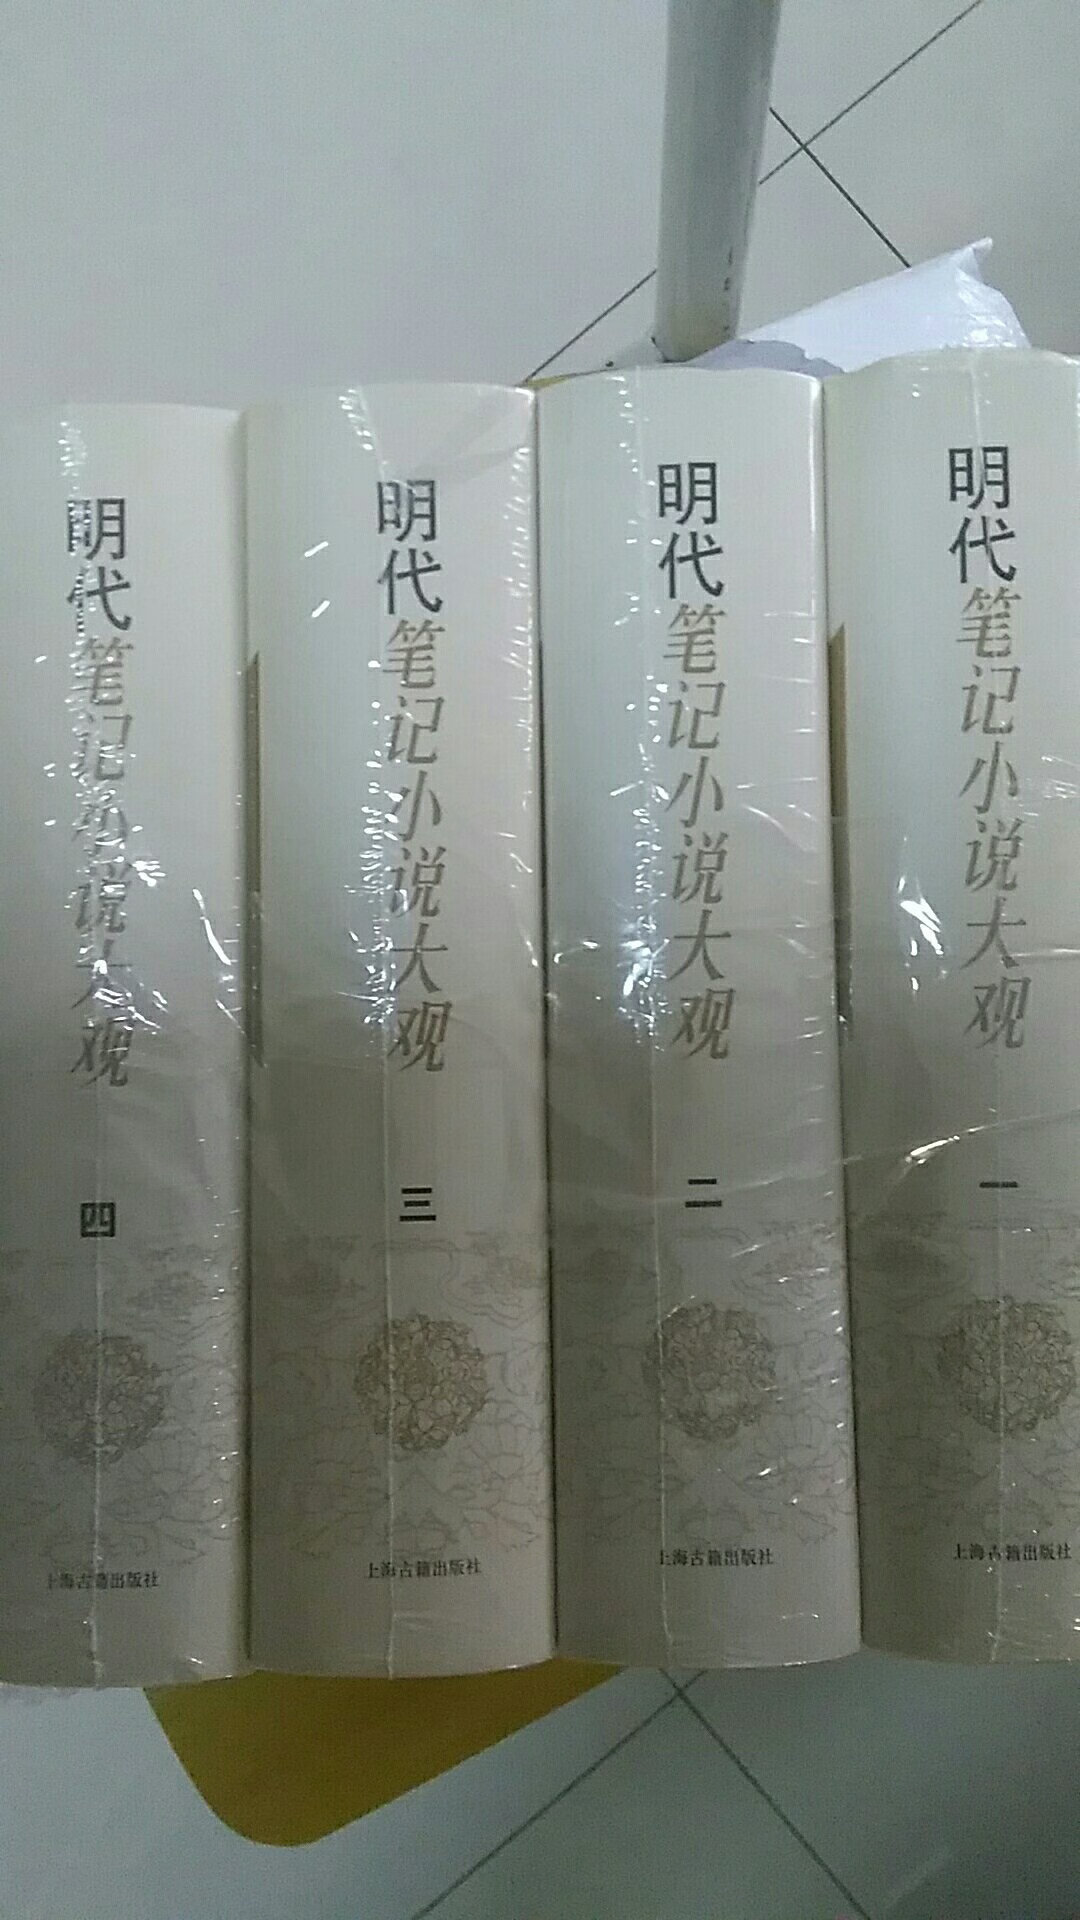 这个系列只剩下《宋元笔记小说大观》没有买了，包装非常好，收到货完好无损。